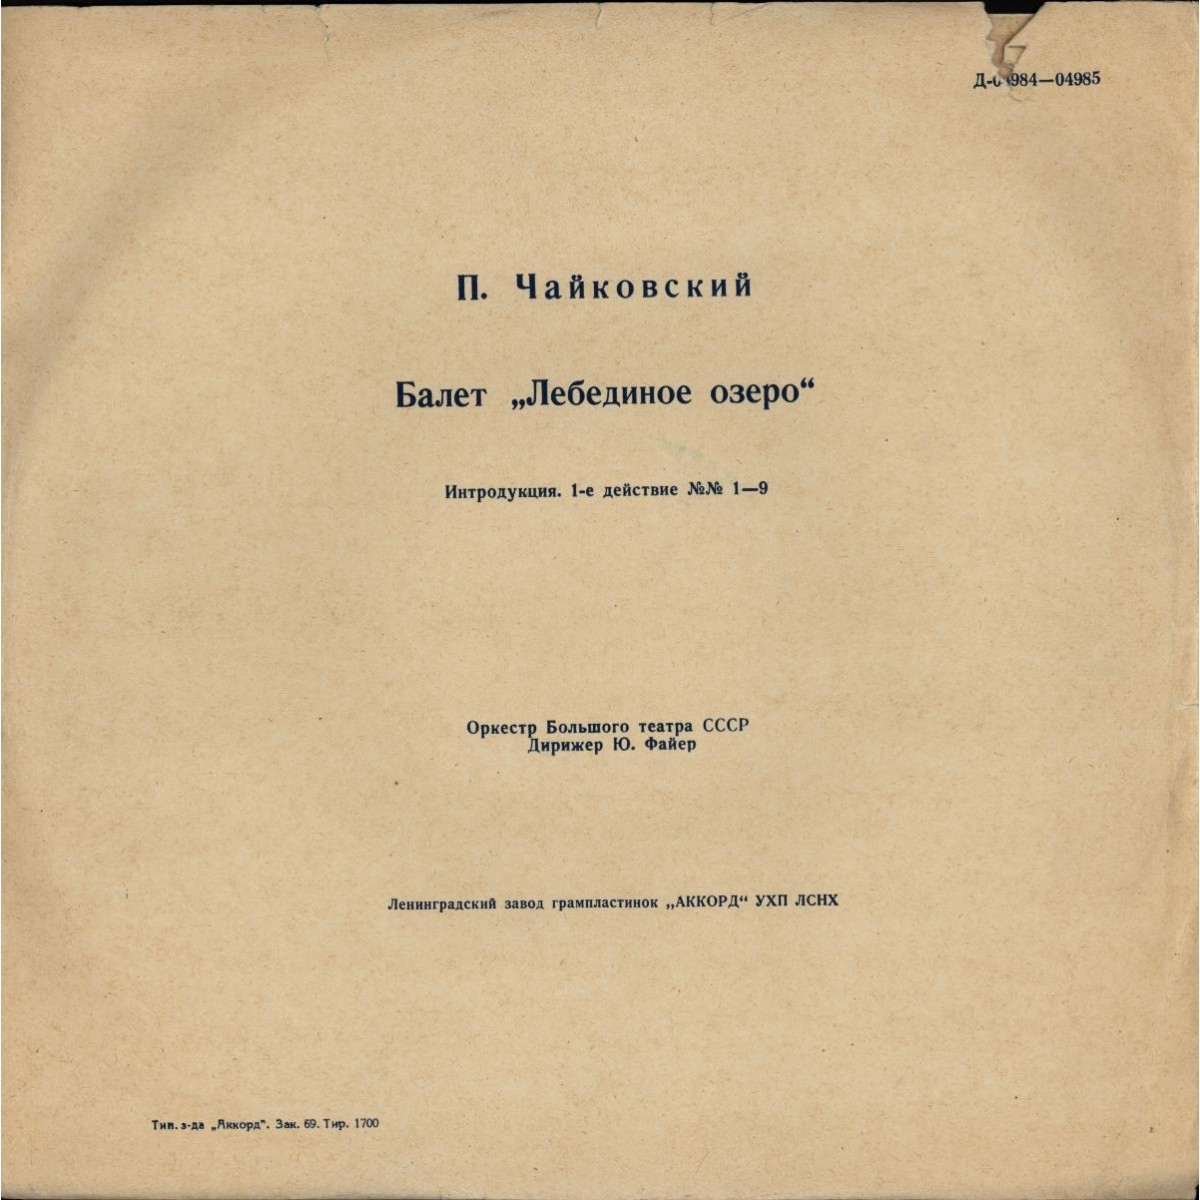 П. Чайковский: Балет "Лебединое озеро" (Оркестр БТ, Ю. Файер)